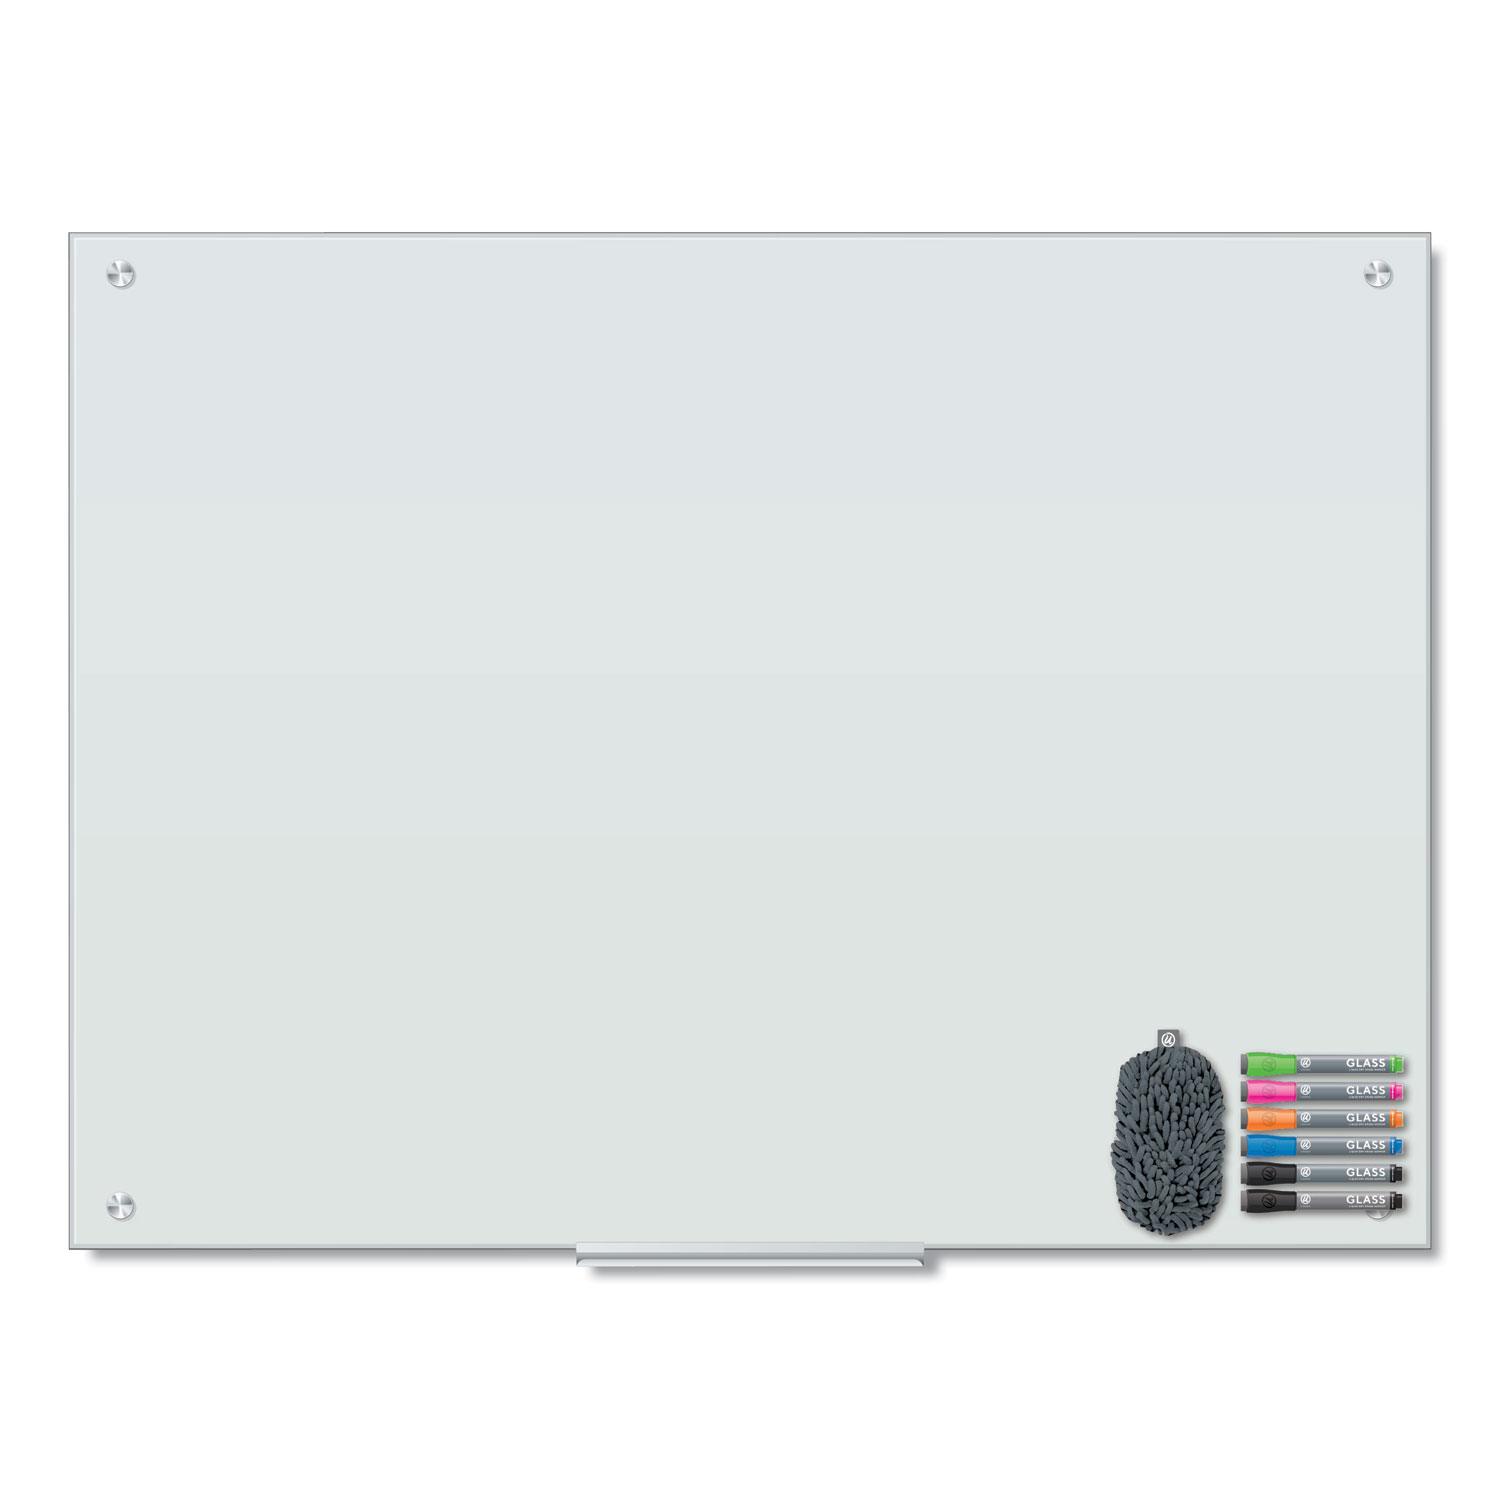  U Brands 3972U00-01 Magnetic Glass Dry Erase Board Value Pack, 48 x 36, White (UBR3972U0001) 